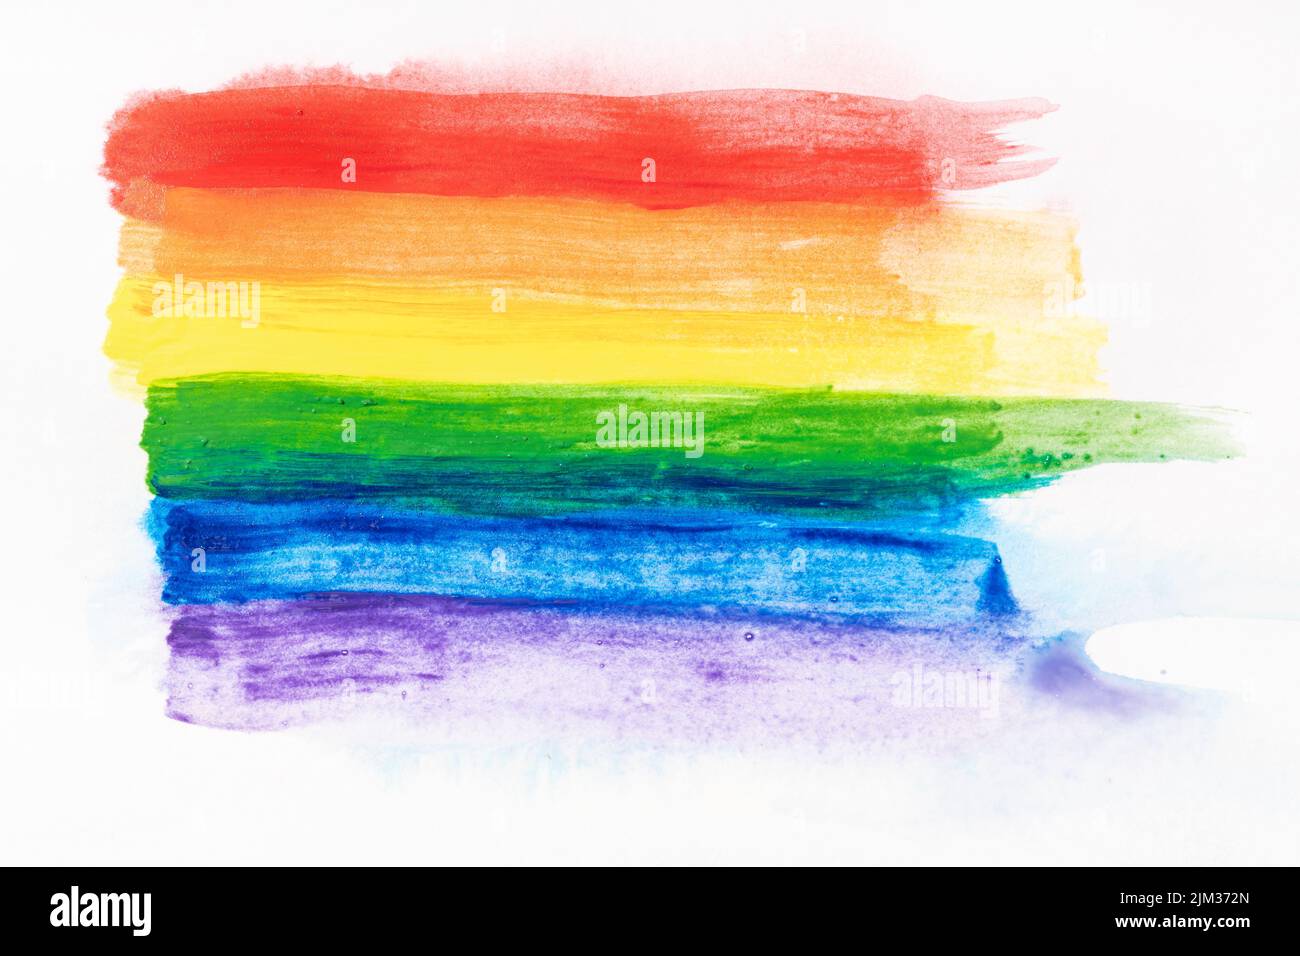 Bandera de orgullo arcoiris pintada a mano con acuarelas aisladas sobre papel de lienzo blanco. Fondo de la bandera arcoiris LGBT Foto de stock